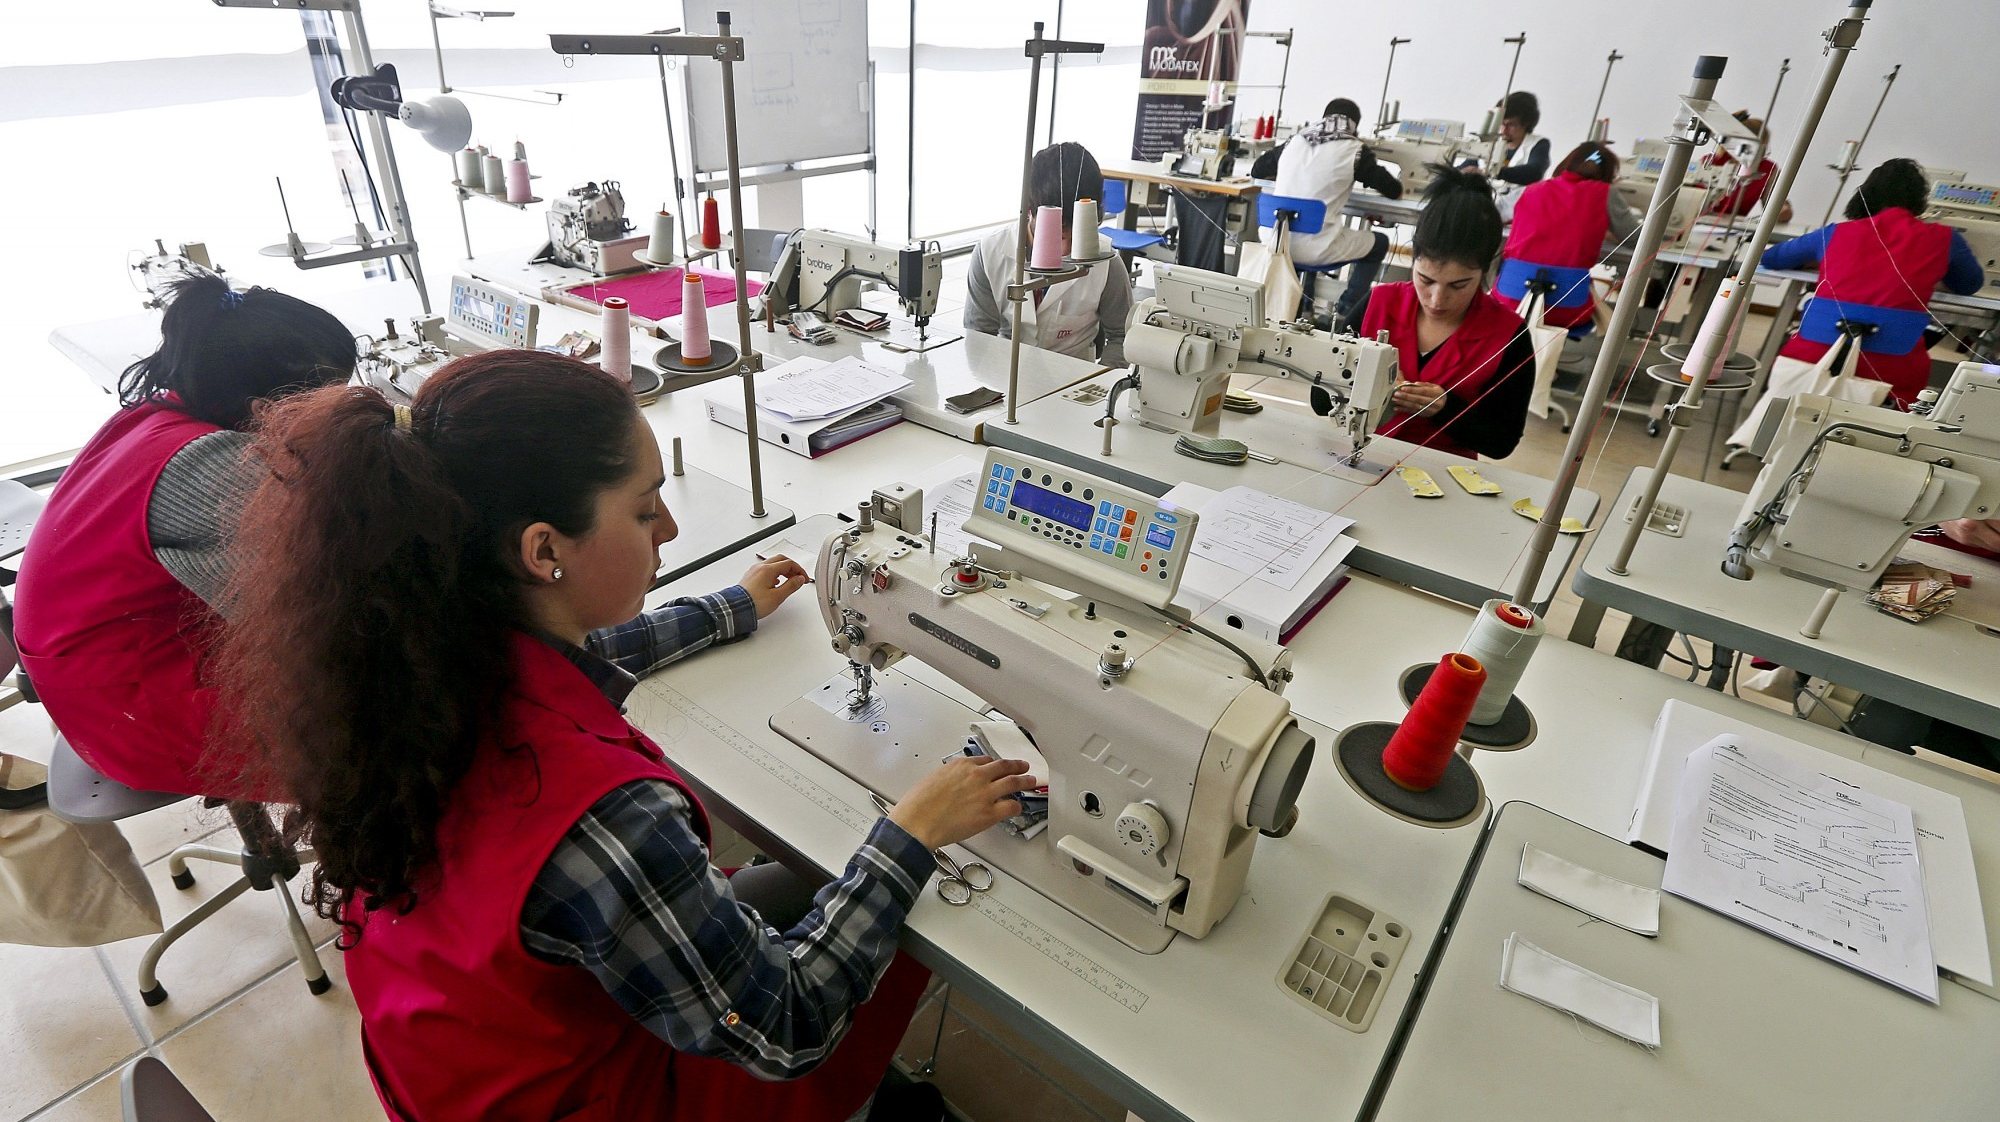 Setor têxtil acusa o aumento no tranporte de matérias primas da Ásia, mas rejeita ser um problema generalizado